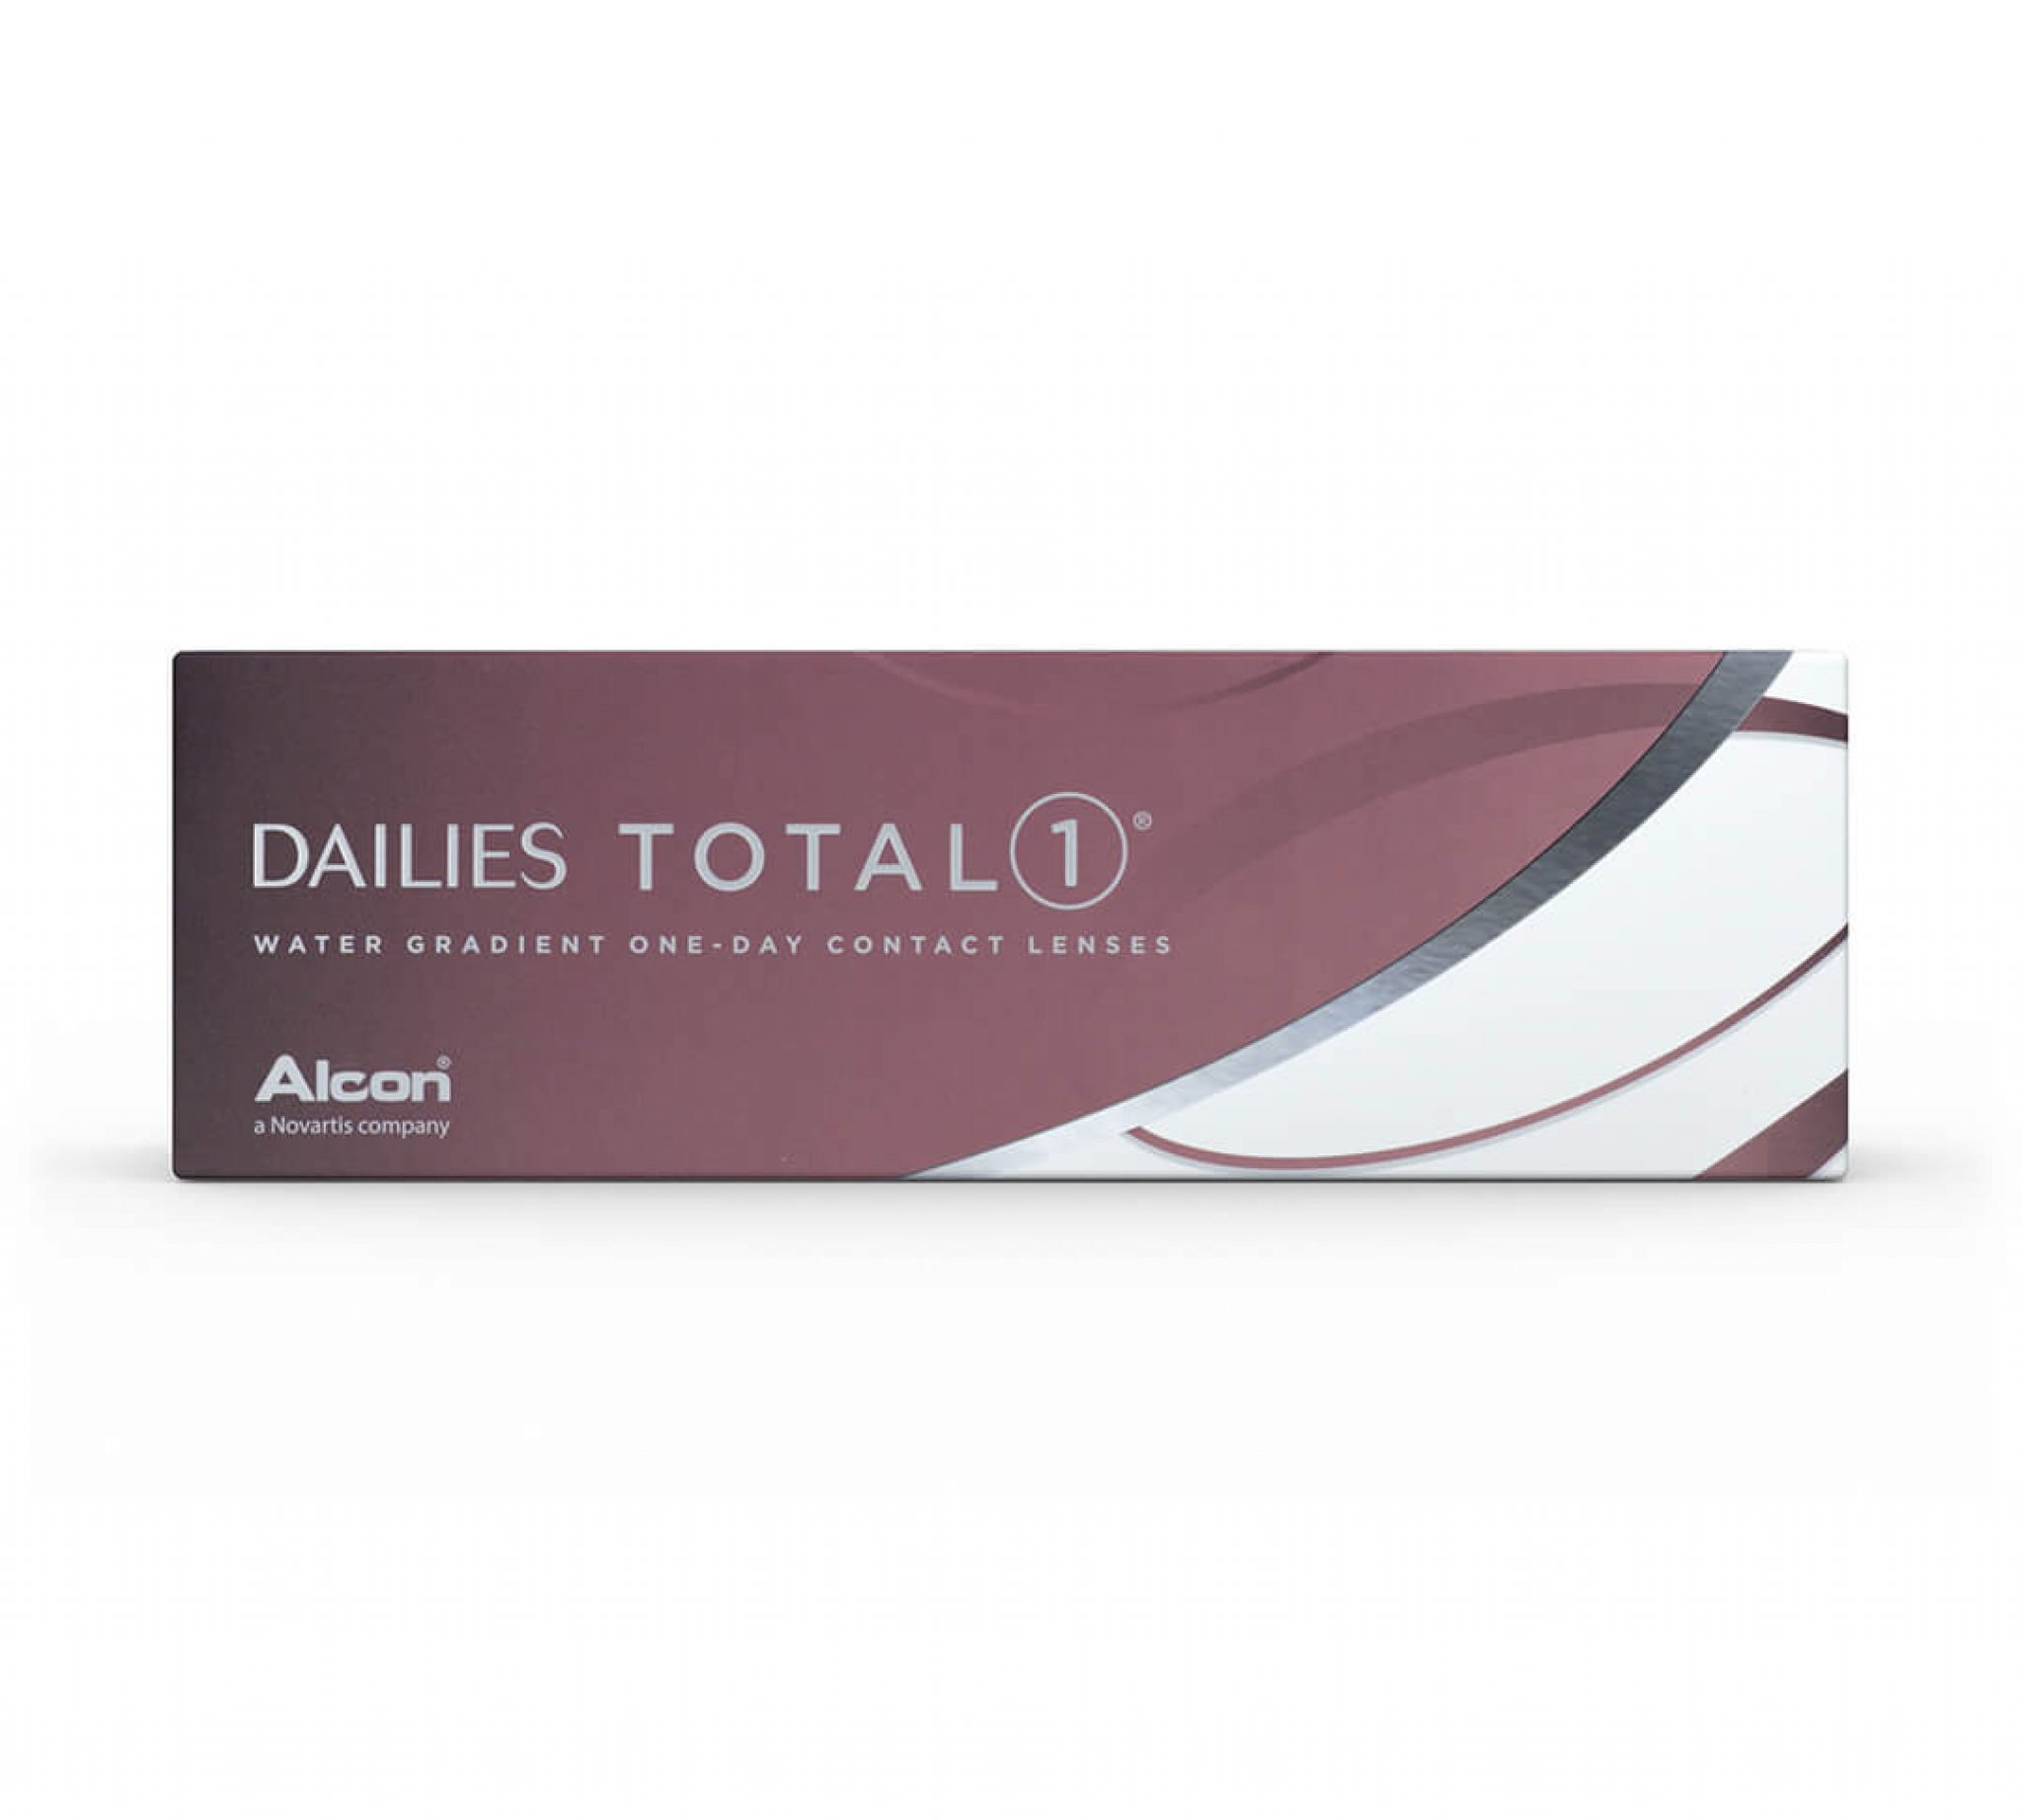 dailies-total-1-contact-lens-price-comparison-australia